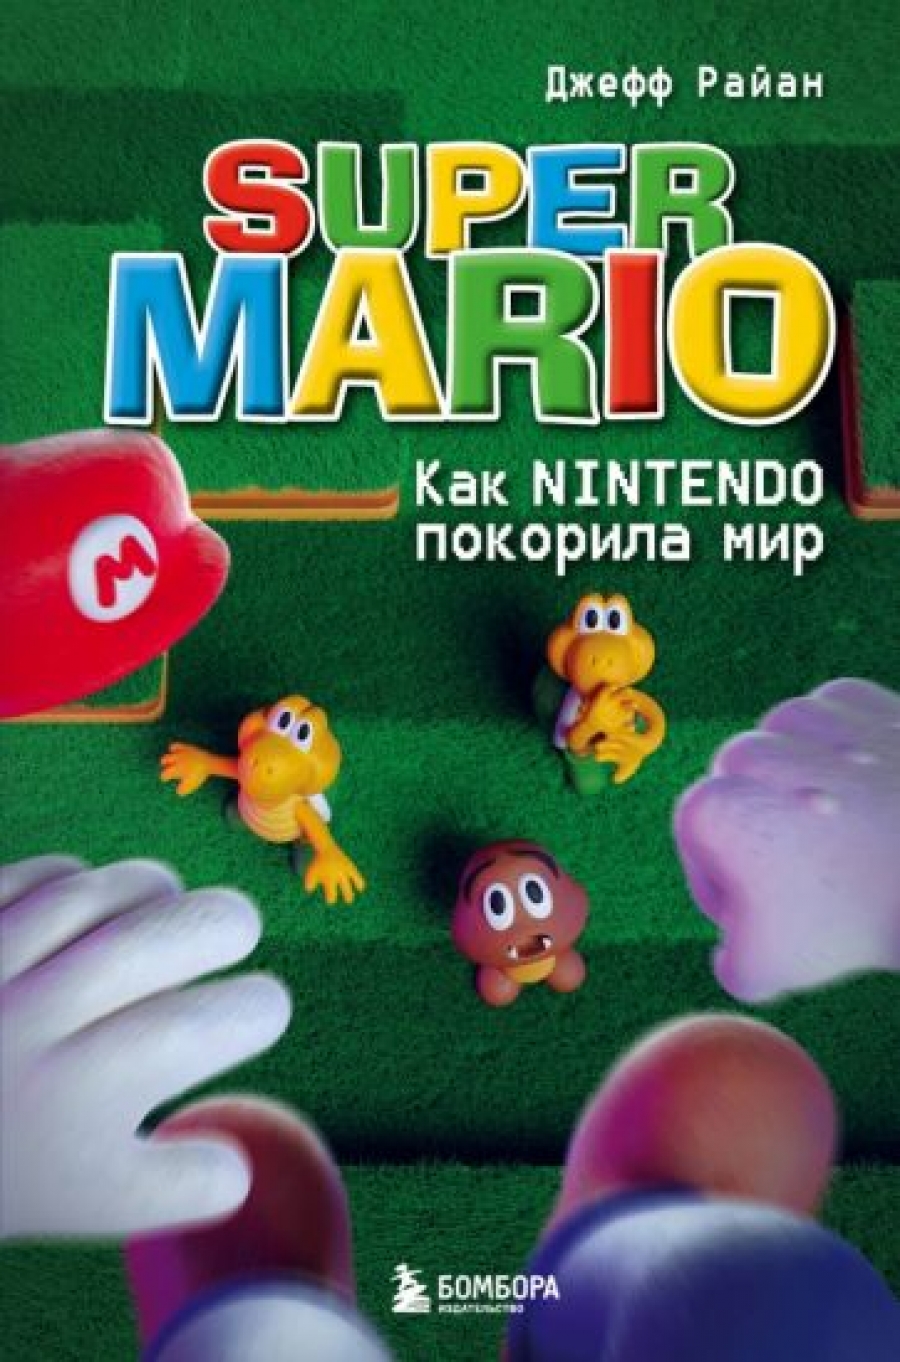  . Super Mario.  Nintendo   